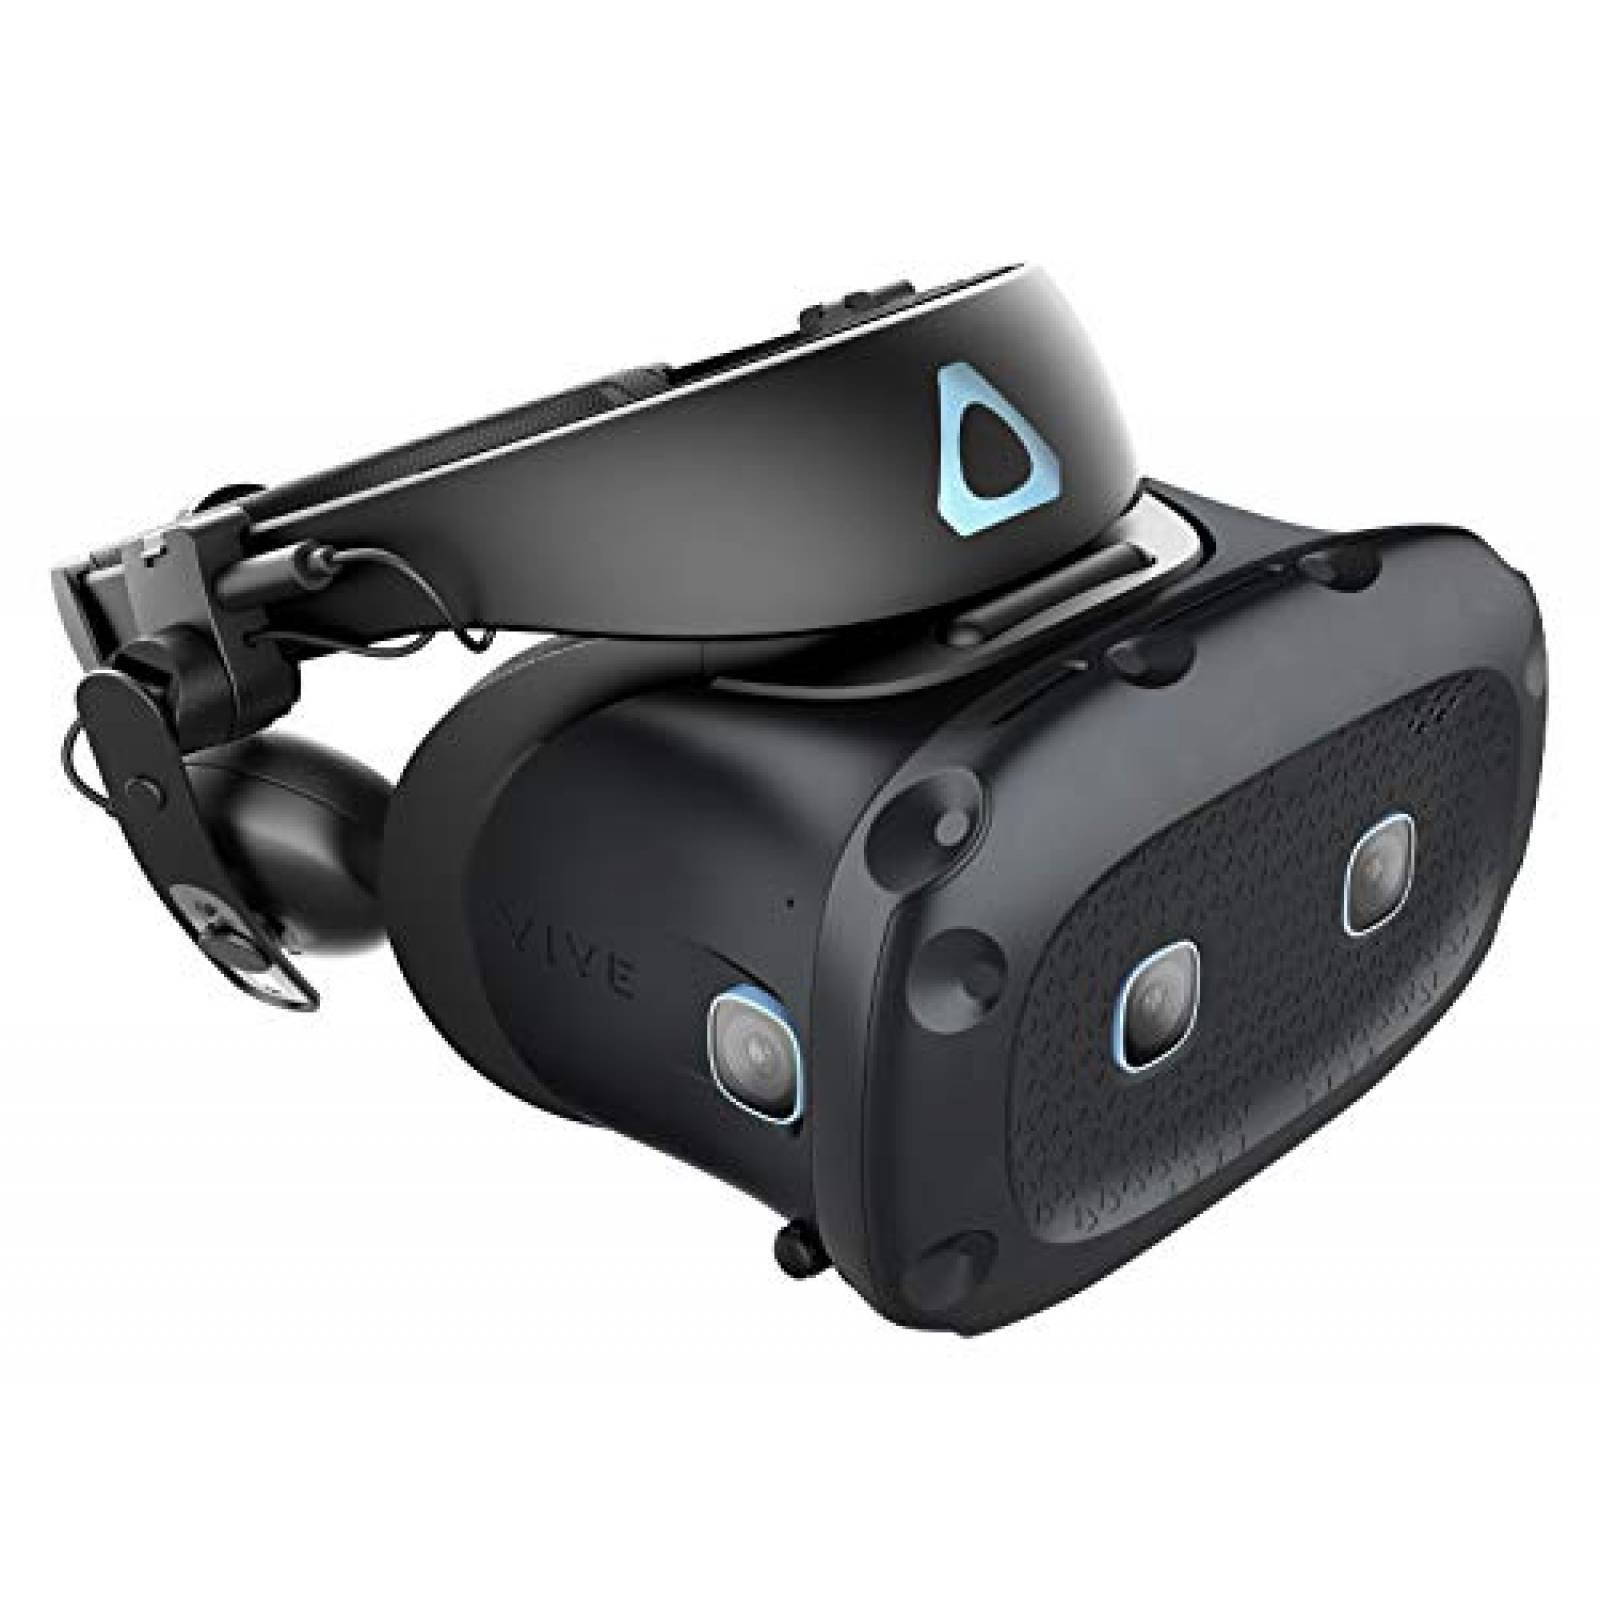 Diadema Realidad Virtual HTC Vive Cosmos Elite PC -Negro